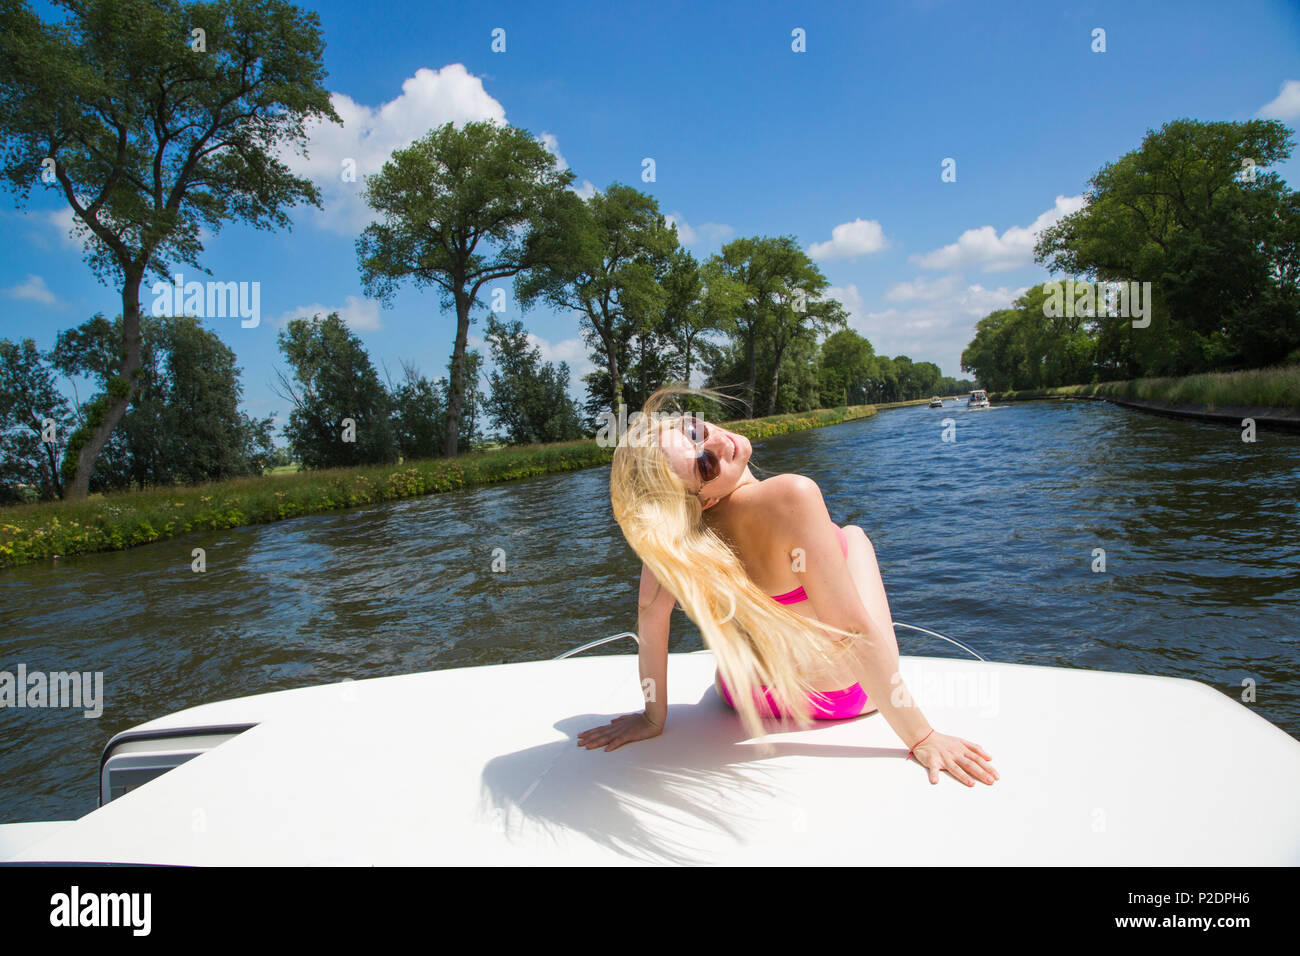 Jeune femme blonde portant un bikini de détente sur le pont d'un bateau péniche Mystique Le Royal sur canal Plassendale - Niuewpoort Banque D'Images